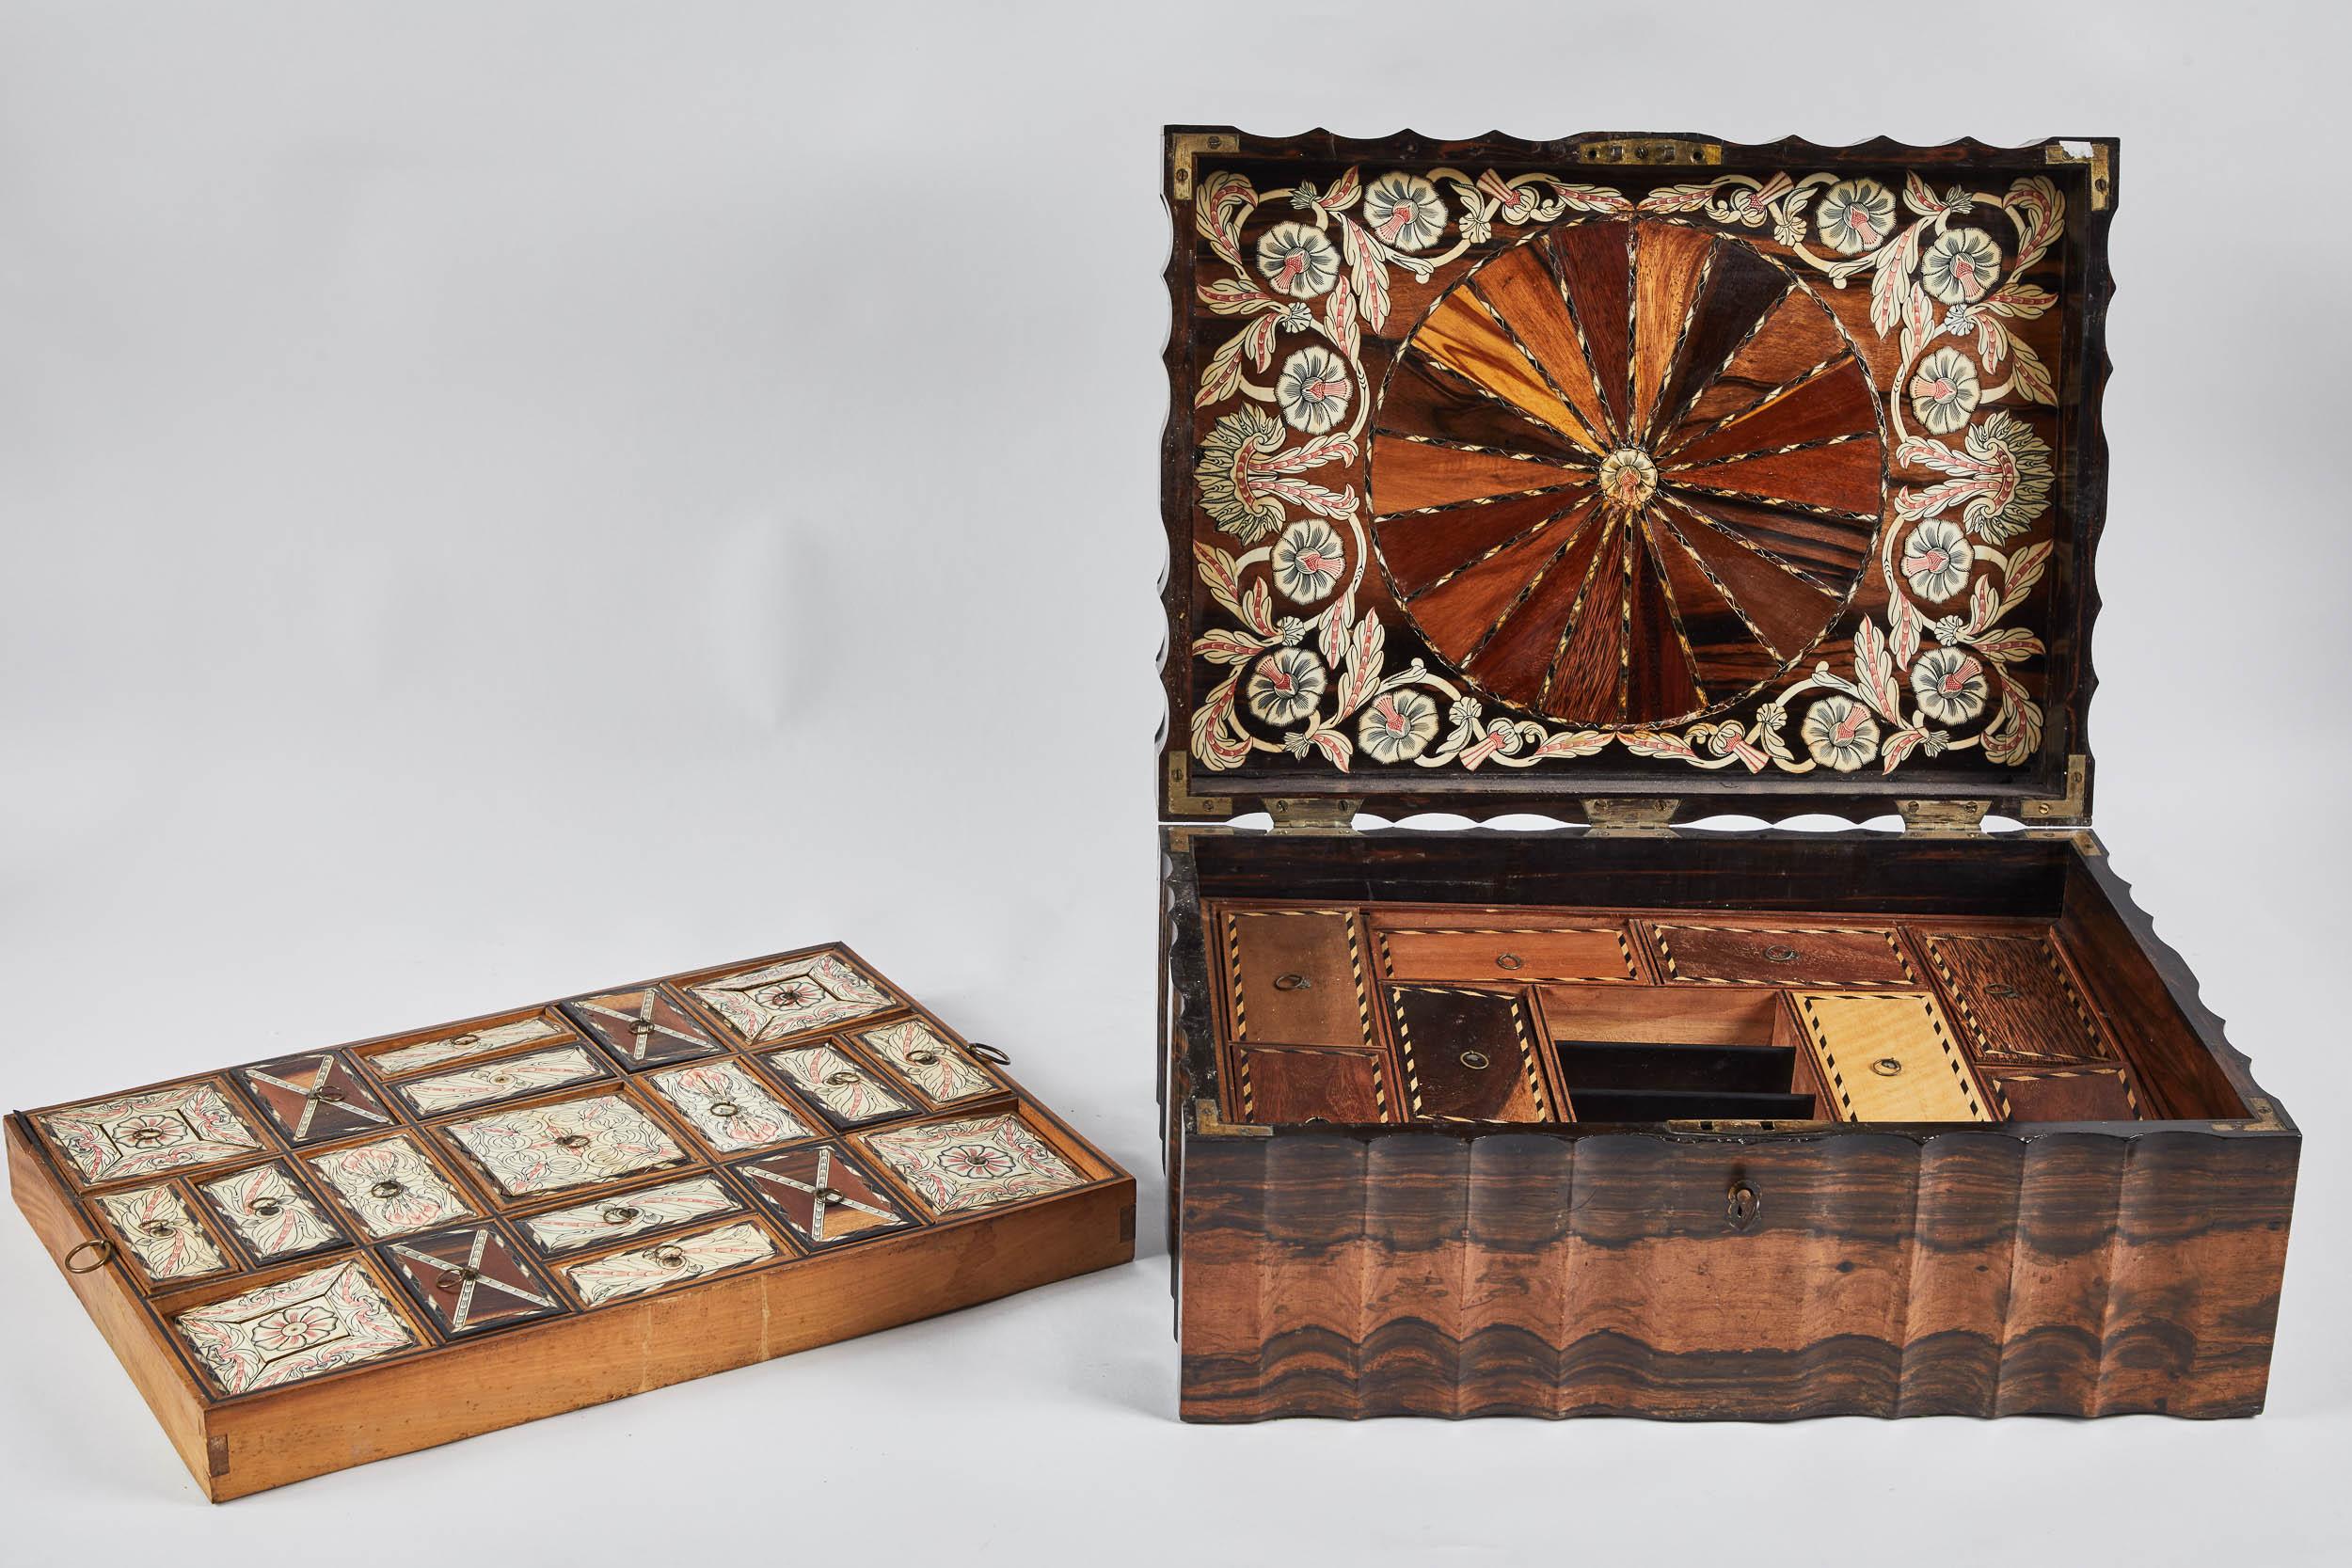 Eine prächtige König Ebenholz Inlaid Sri Lankan Präsentation Box, ca. 1880er Jahre mit allen Stücken enthalten. Sie wurden geschaffen, um die Fähigkeiten eines Handwerkers im Umgang mit verschiedenen Materialien und Techniken zu präsentieren,